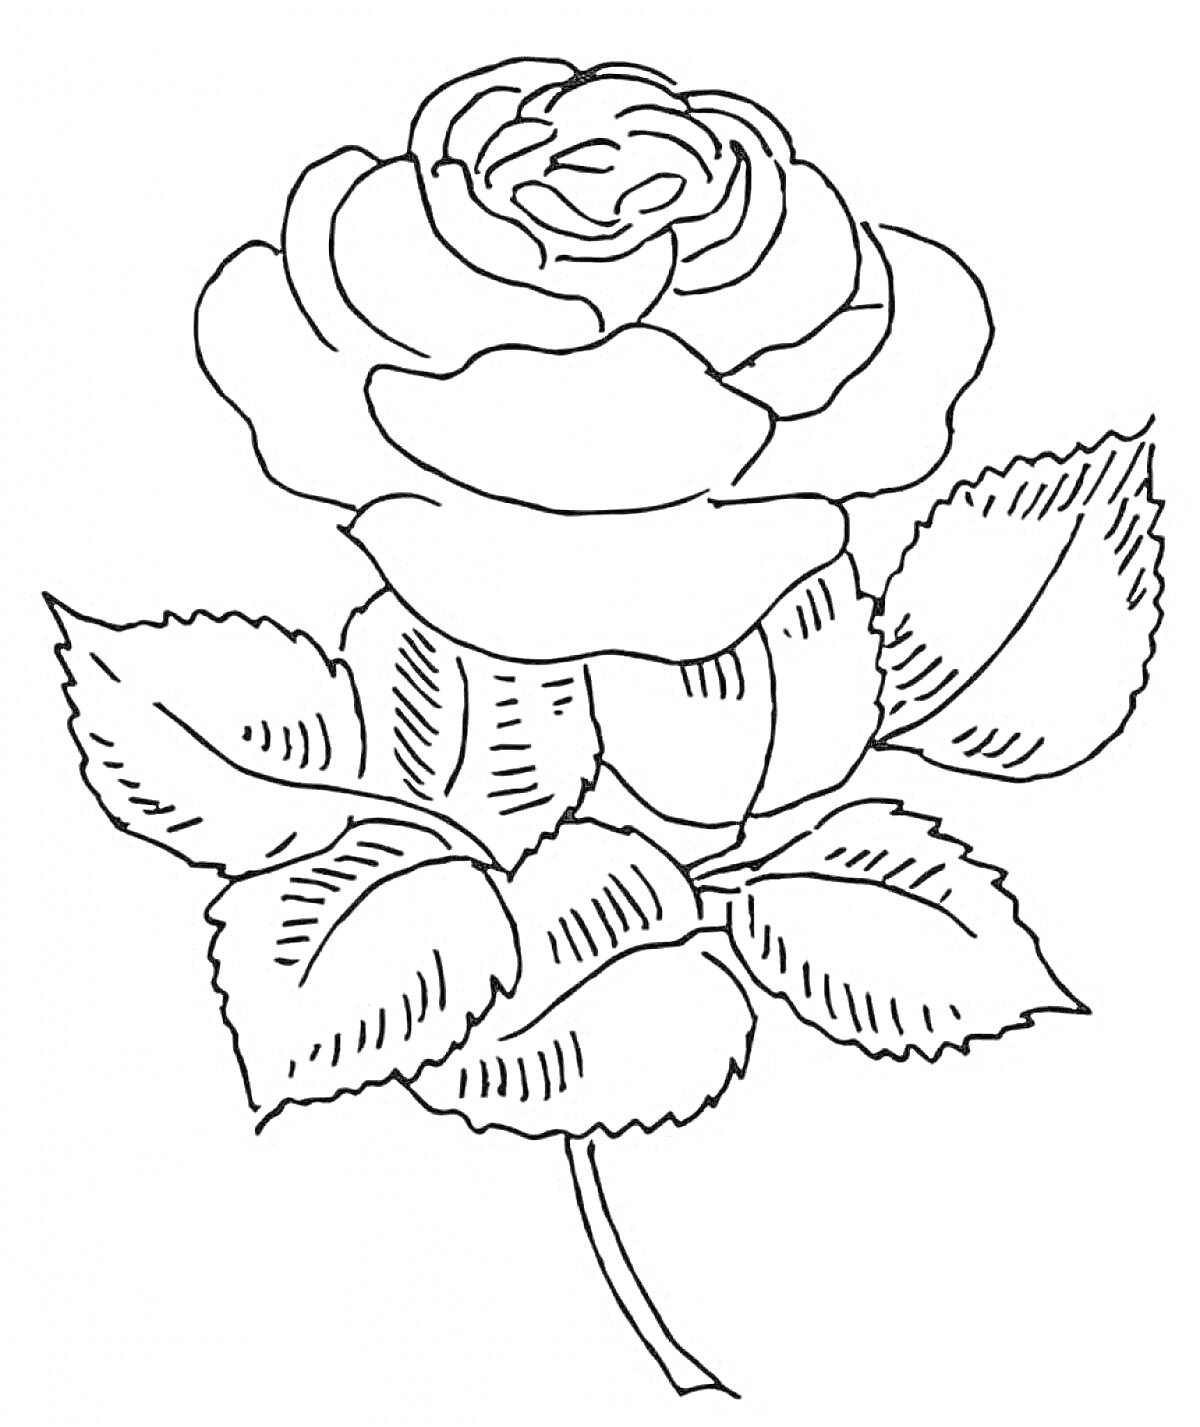 Раскраска Раскраска с изображением розы с листьями для детей